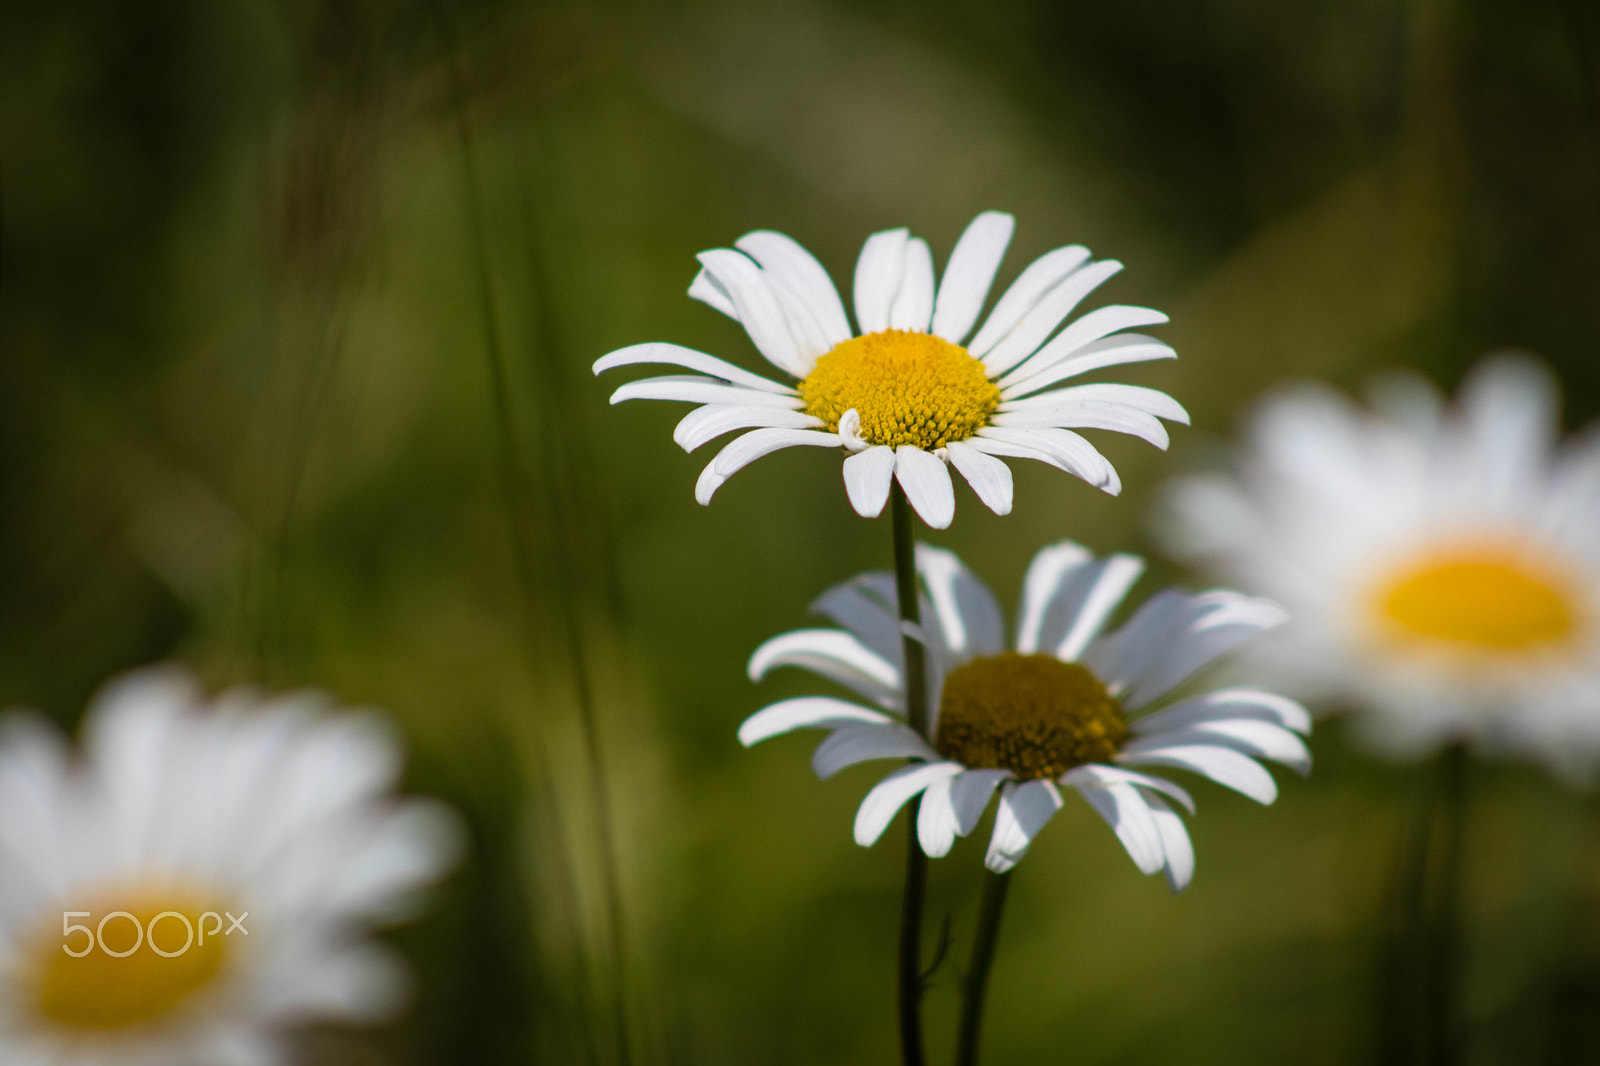 Canon EOS 80D sample photo. Spring daisy photography